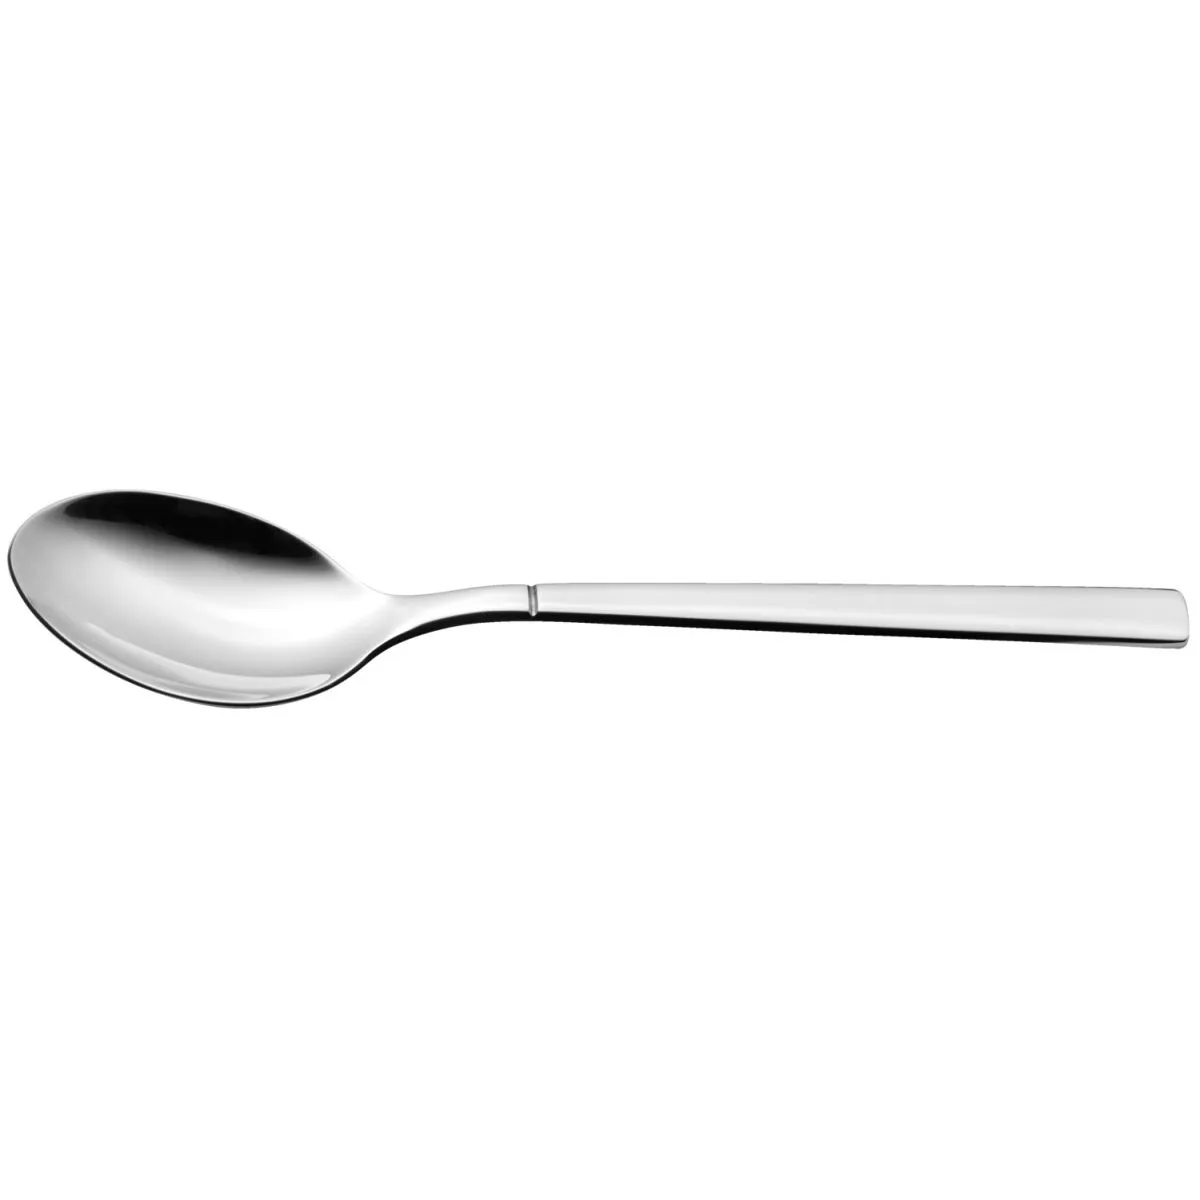 Cucchiaino tè Luano VEGA; 14 cm (L); argento, manico argento; 12 pz. / confezione